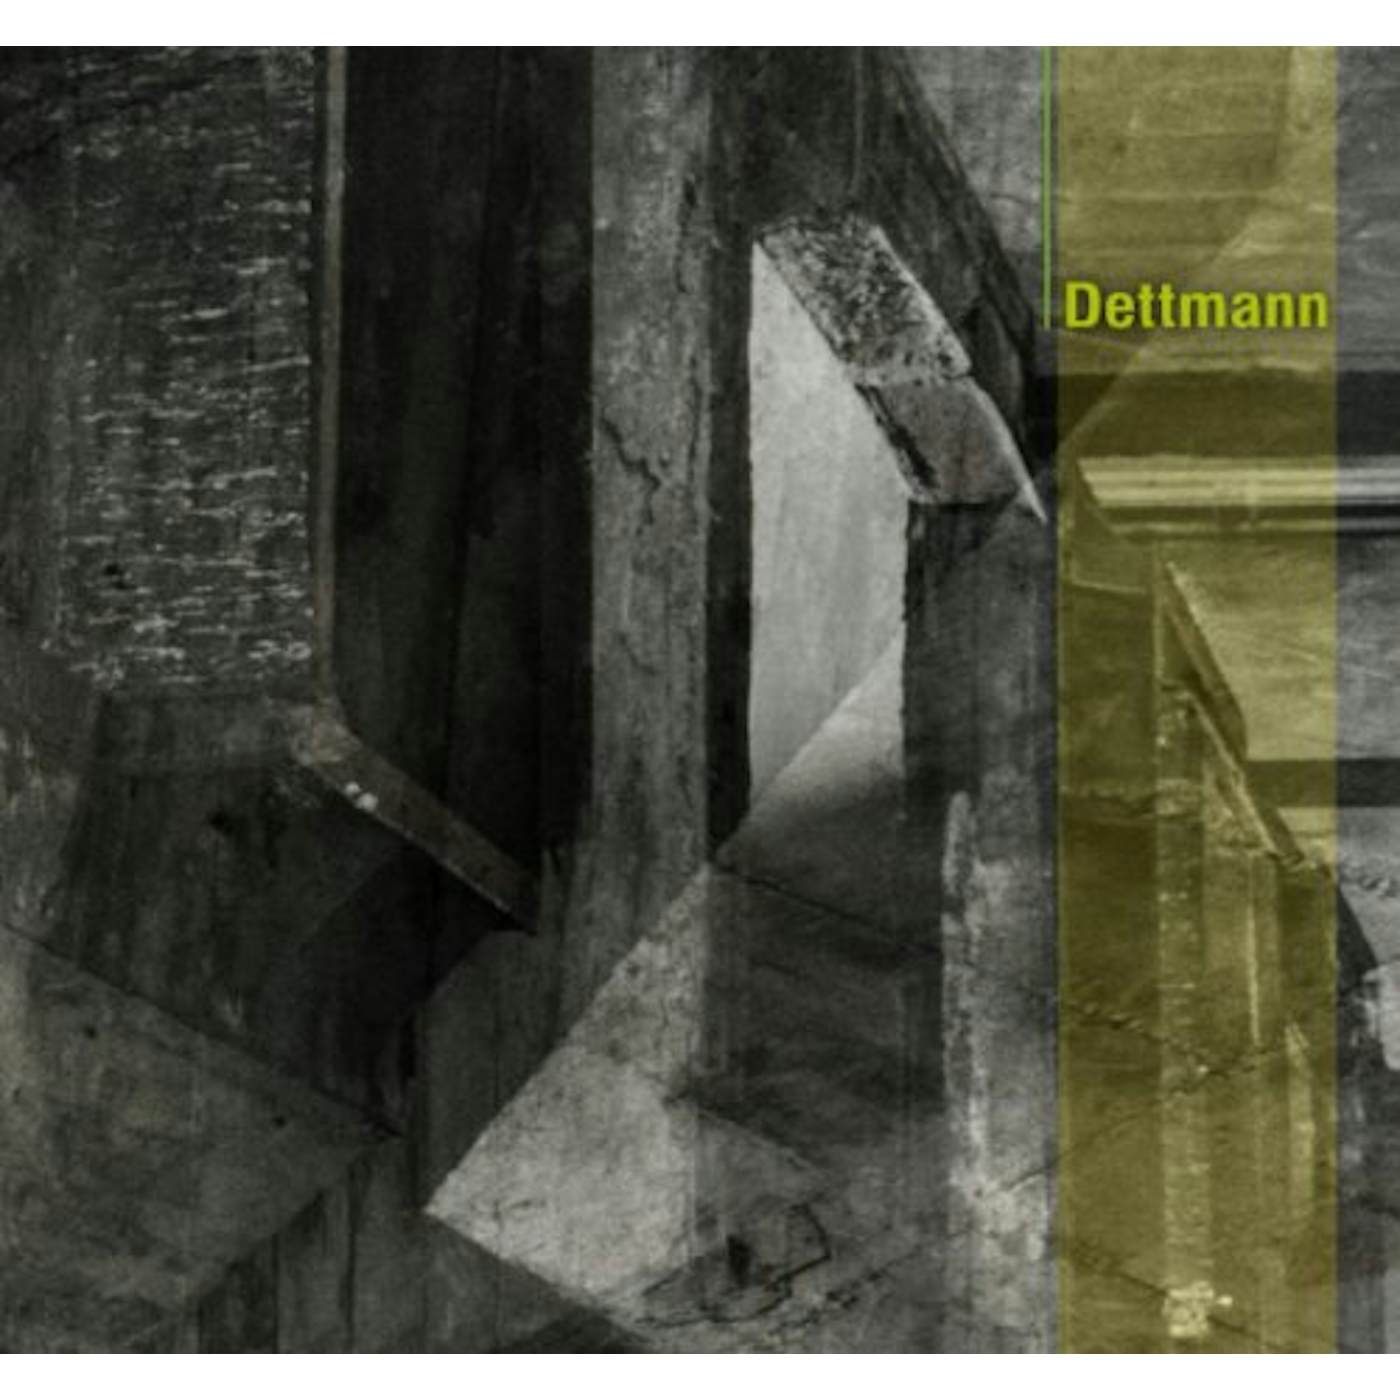 Marcel Dettmann Dettmann Vinyl Record